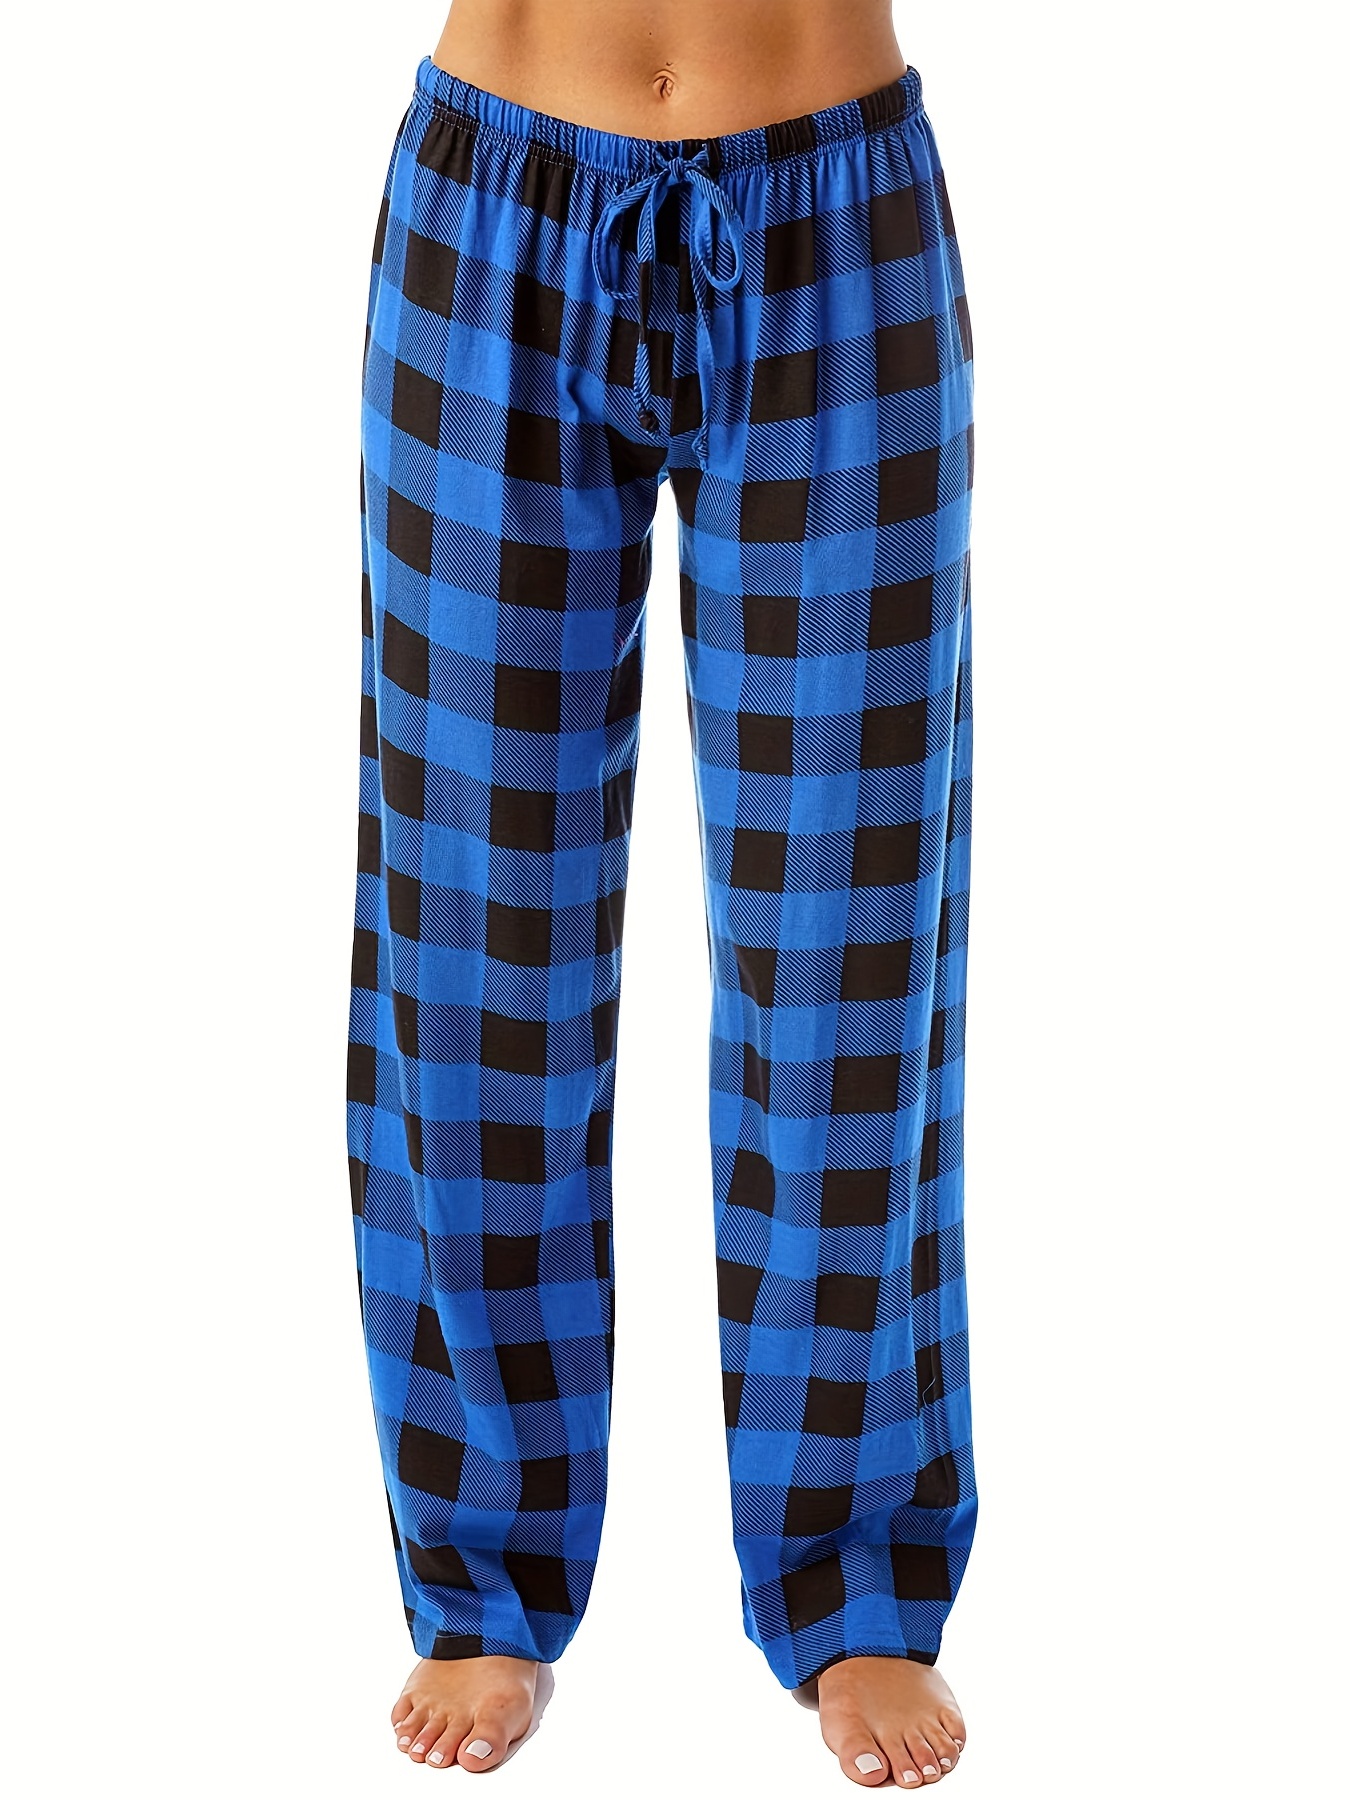 Women's Cotton Flannel Plaid Pajama Jogger Pants